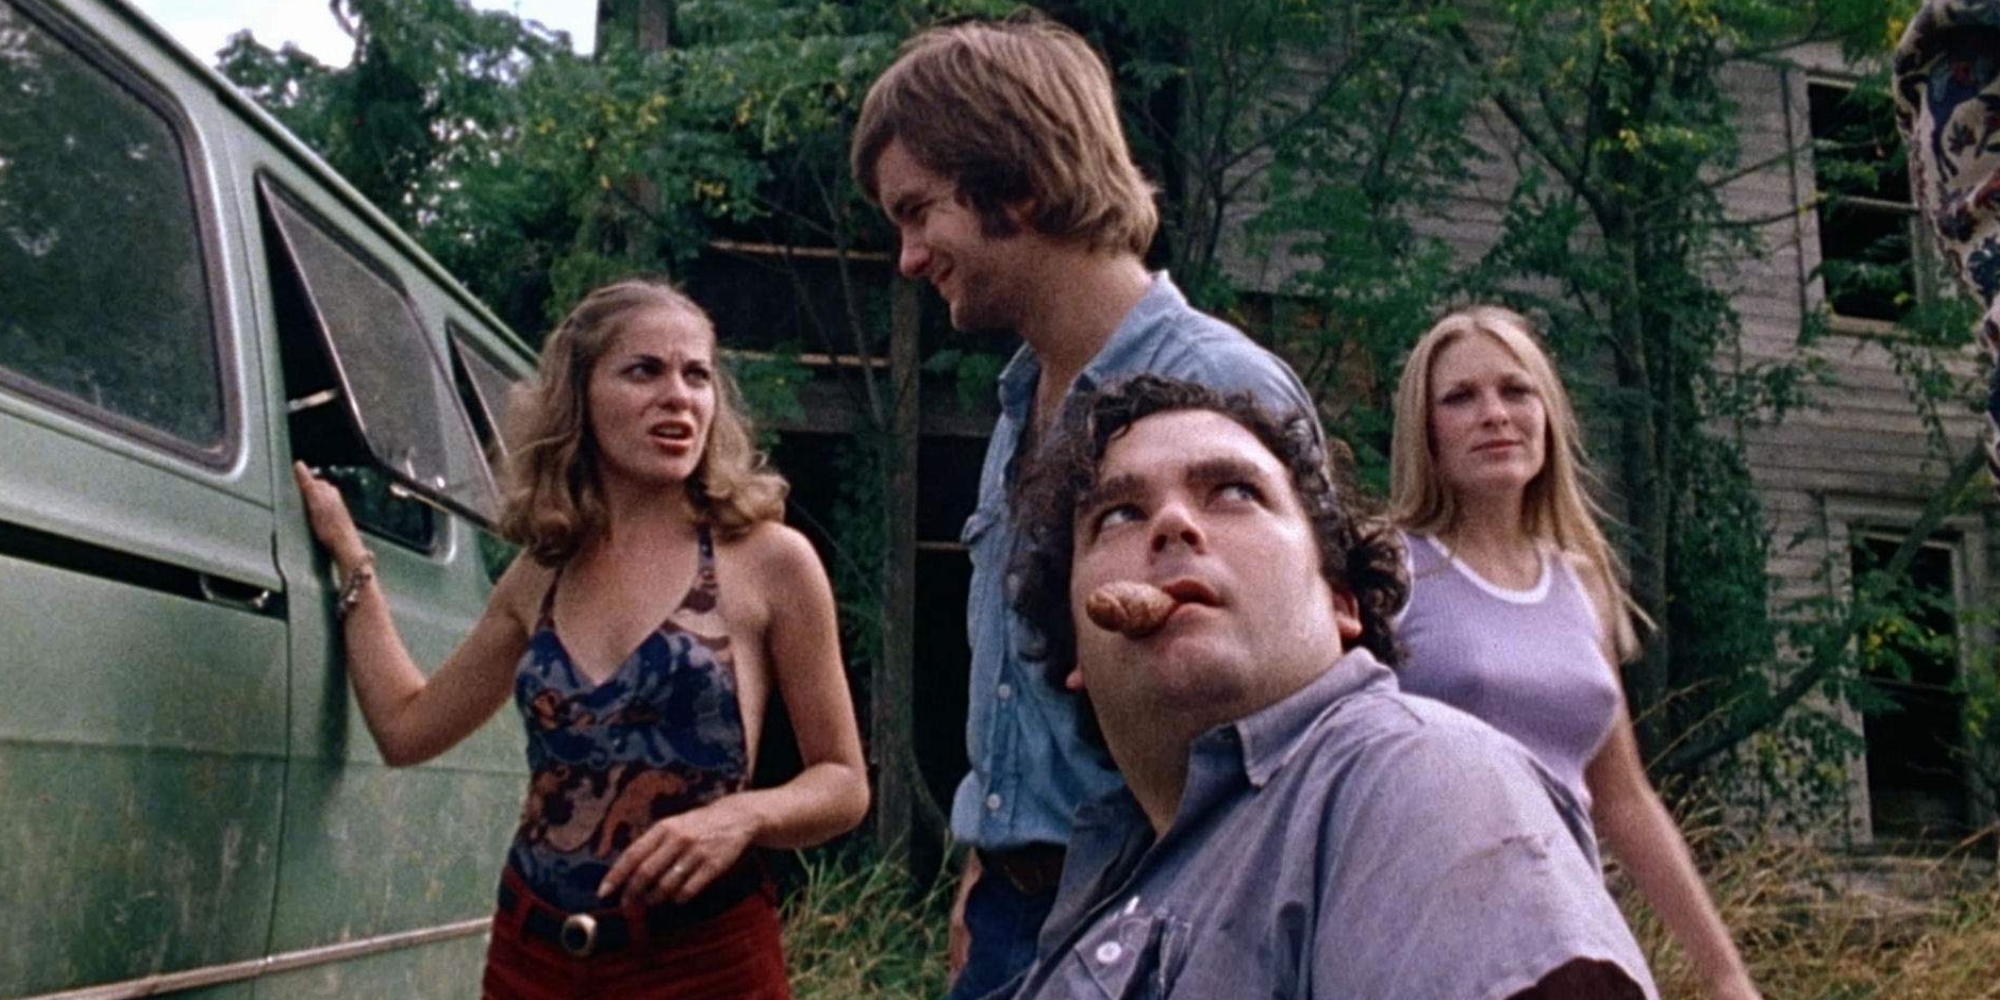 Eine Gruppe von Menschen steht in „The Texas Chainsaw Massacre“ (1974) in der Nähe eines Fahrzeugs und sieht verängstigt aus.